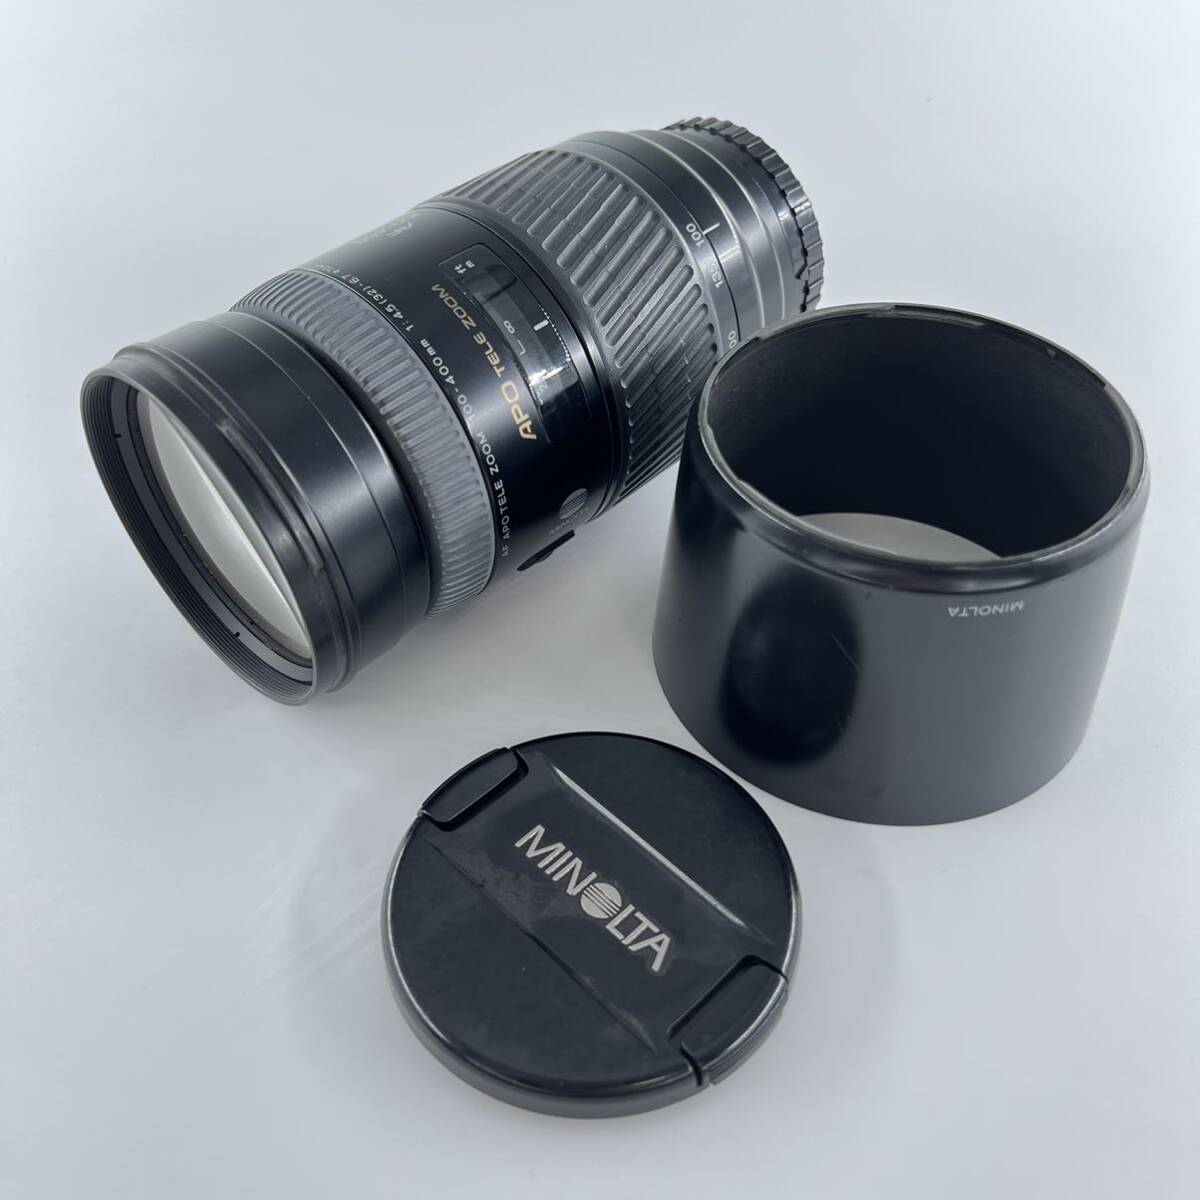 G4b MINOLTA AF APO TELE ZOOM 100-400mm 1:4.5-6.7 カメラレンズ の画像1